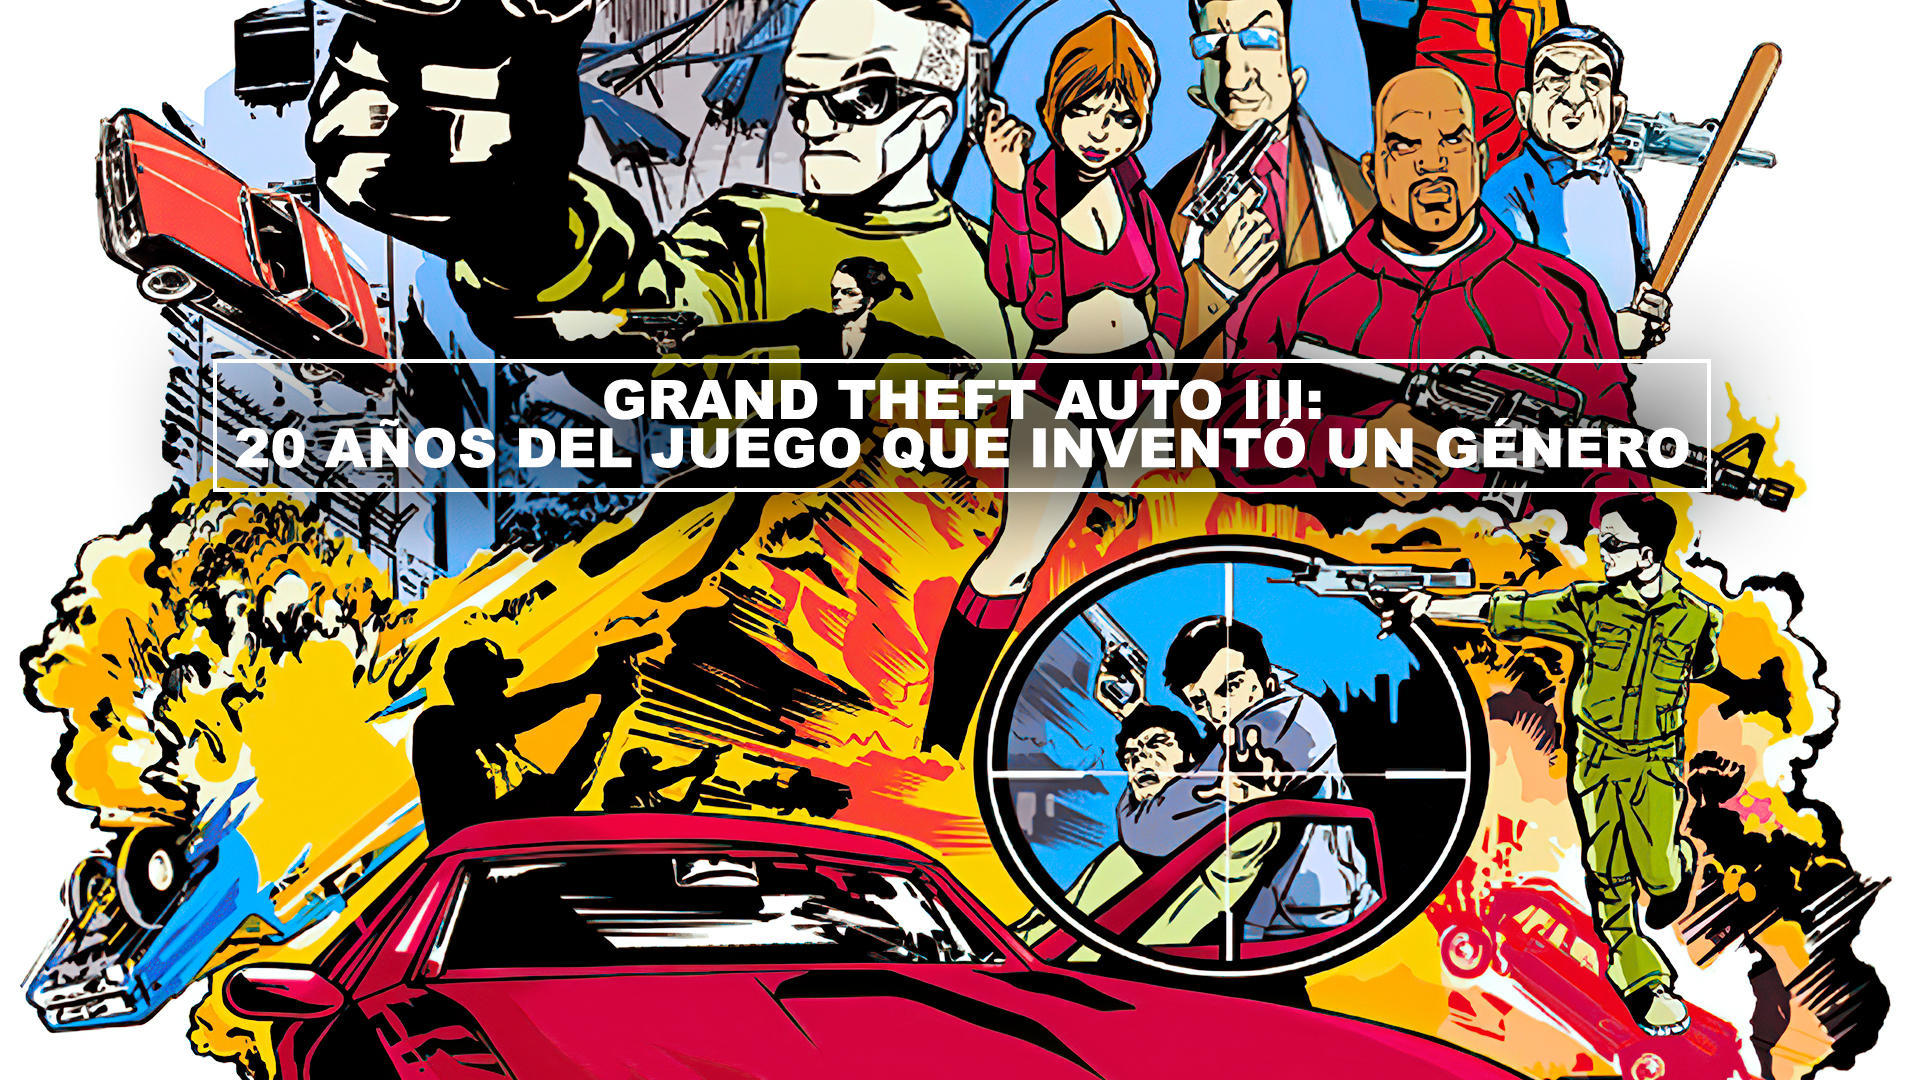 Grand Theft Auto III: 20 aos del juego que invent un gnero